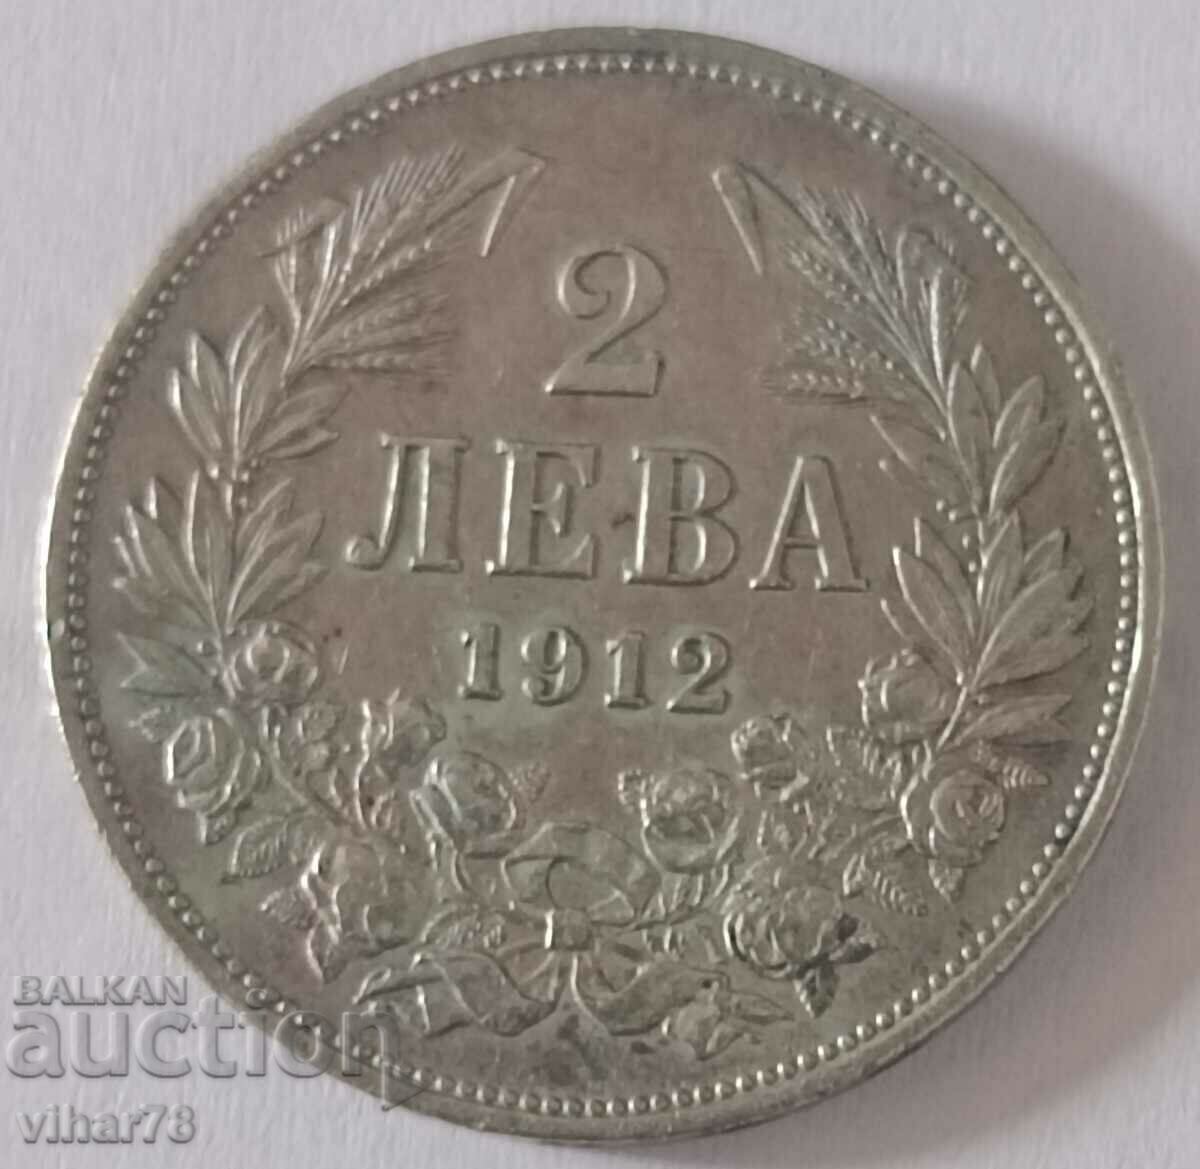 ΑΣΗΜΙ ΝΟΜΙΣΜΑ 2 ΛΕΒΑ 1912